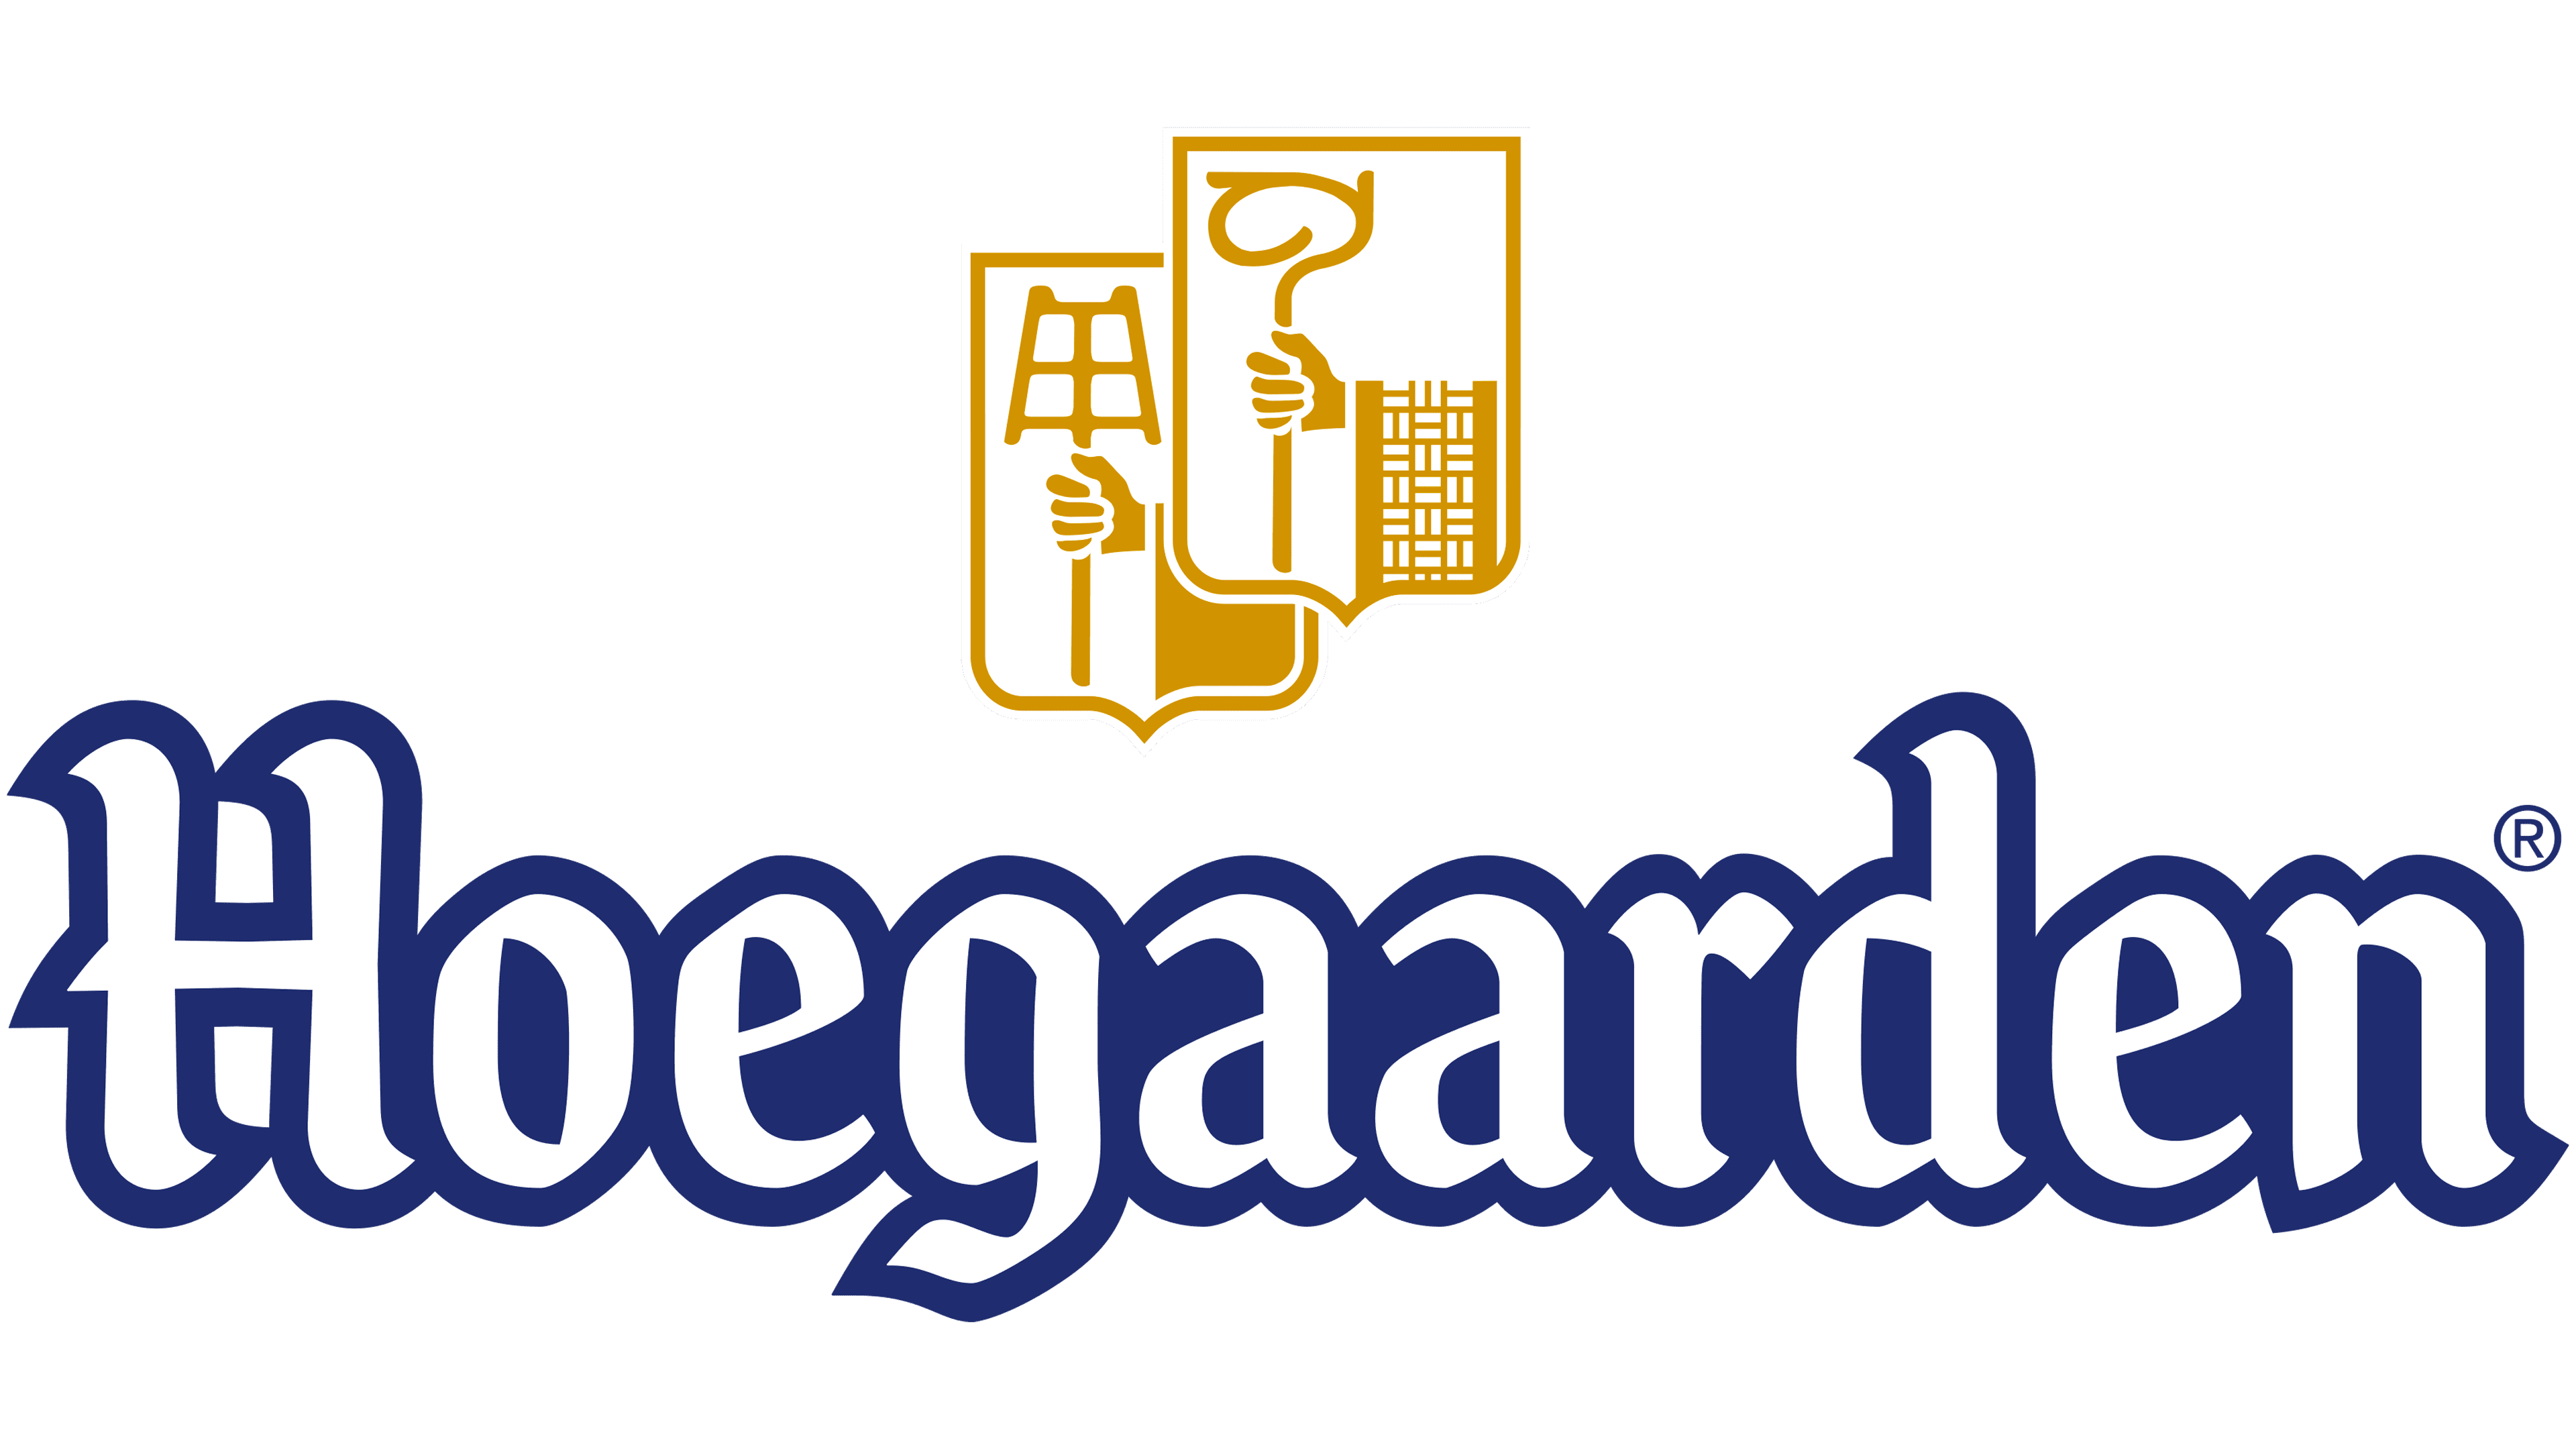 Hoegaarden (beer) Logo